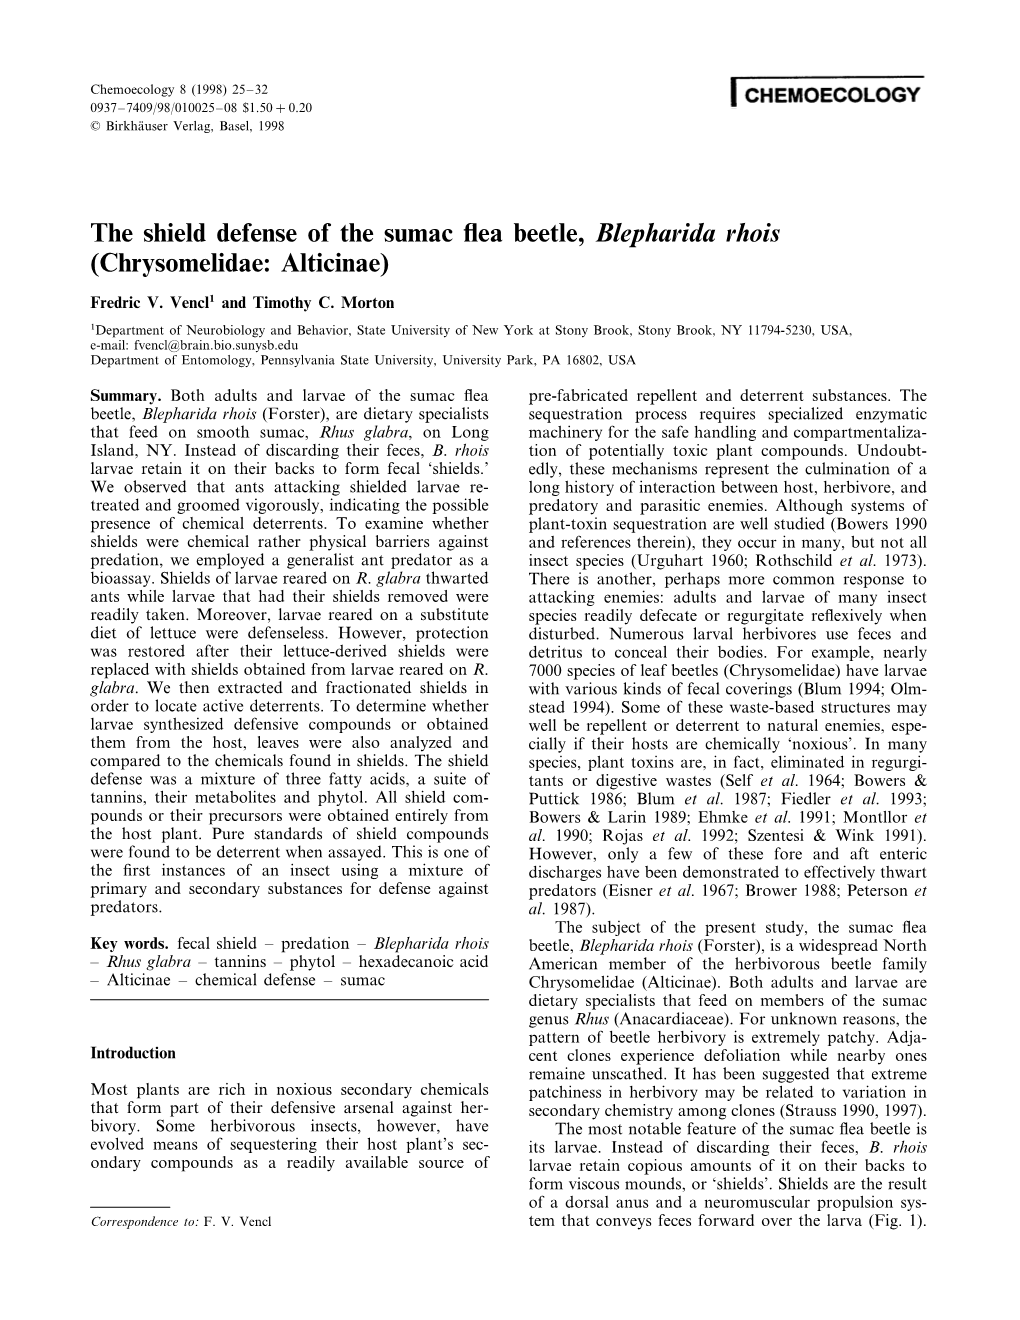 The Shield Defense of the Sumac Flea Beetle, Blepharida Rhois